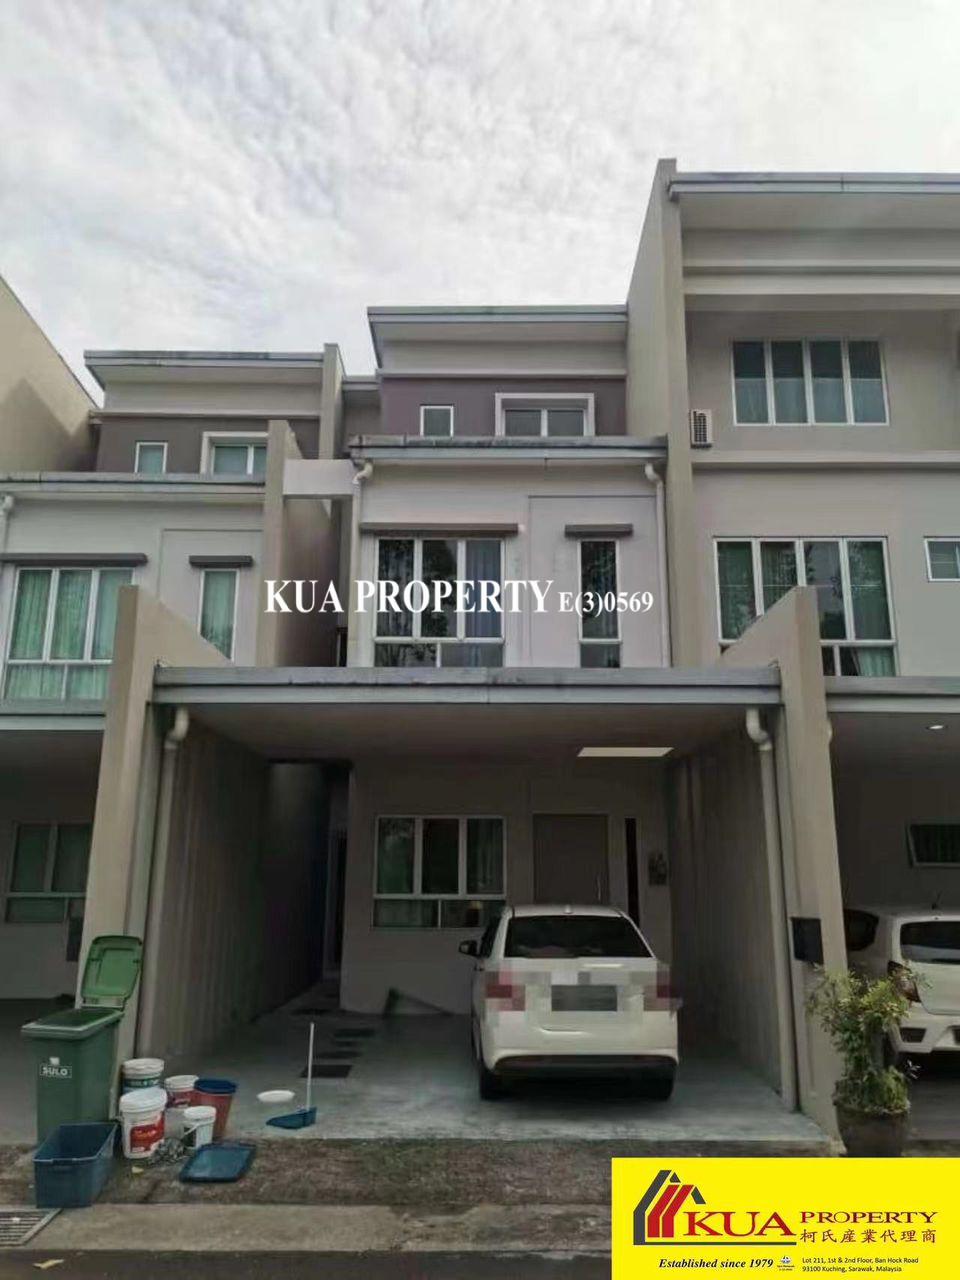 Academia Lane Townhouse For Sale! nearby Unimas Kota Samarahan